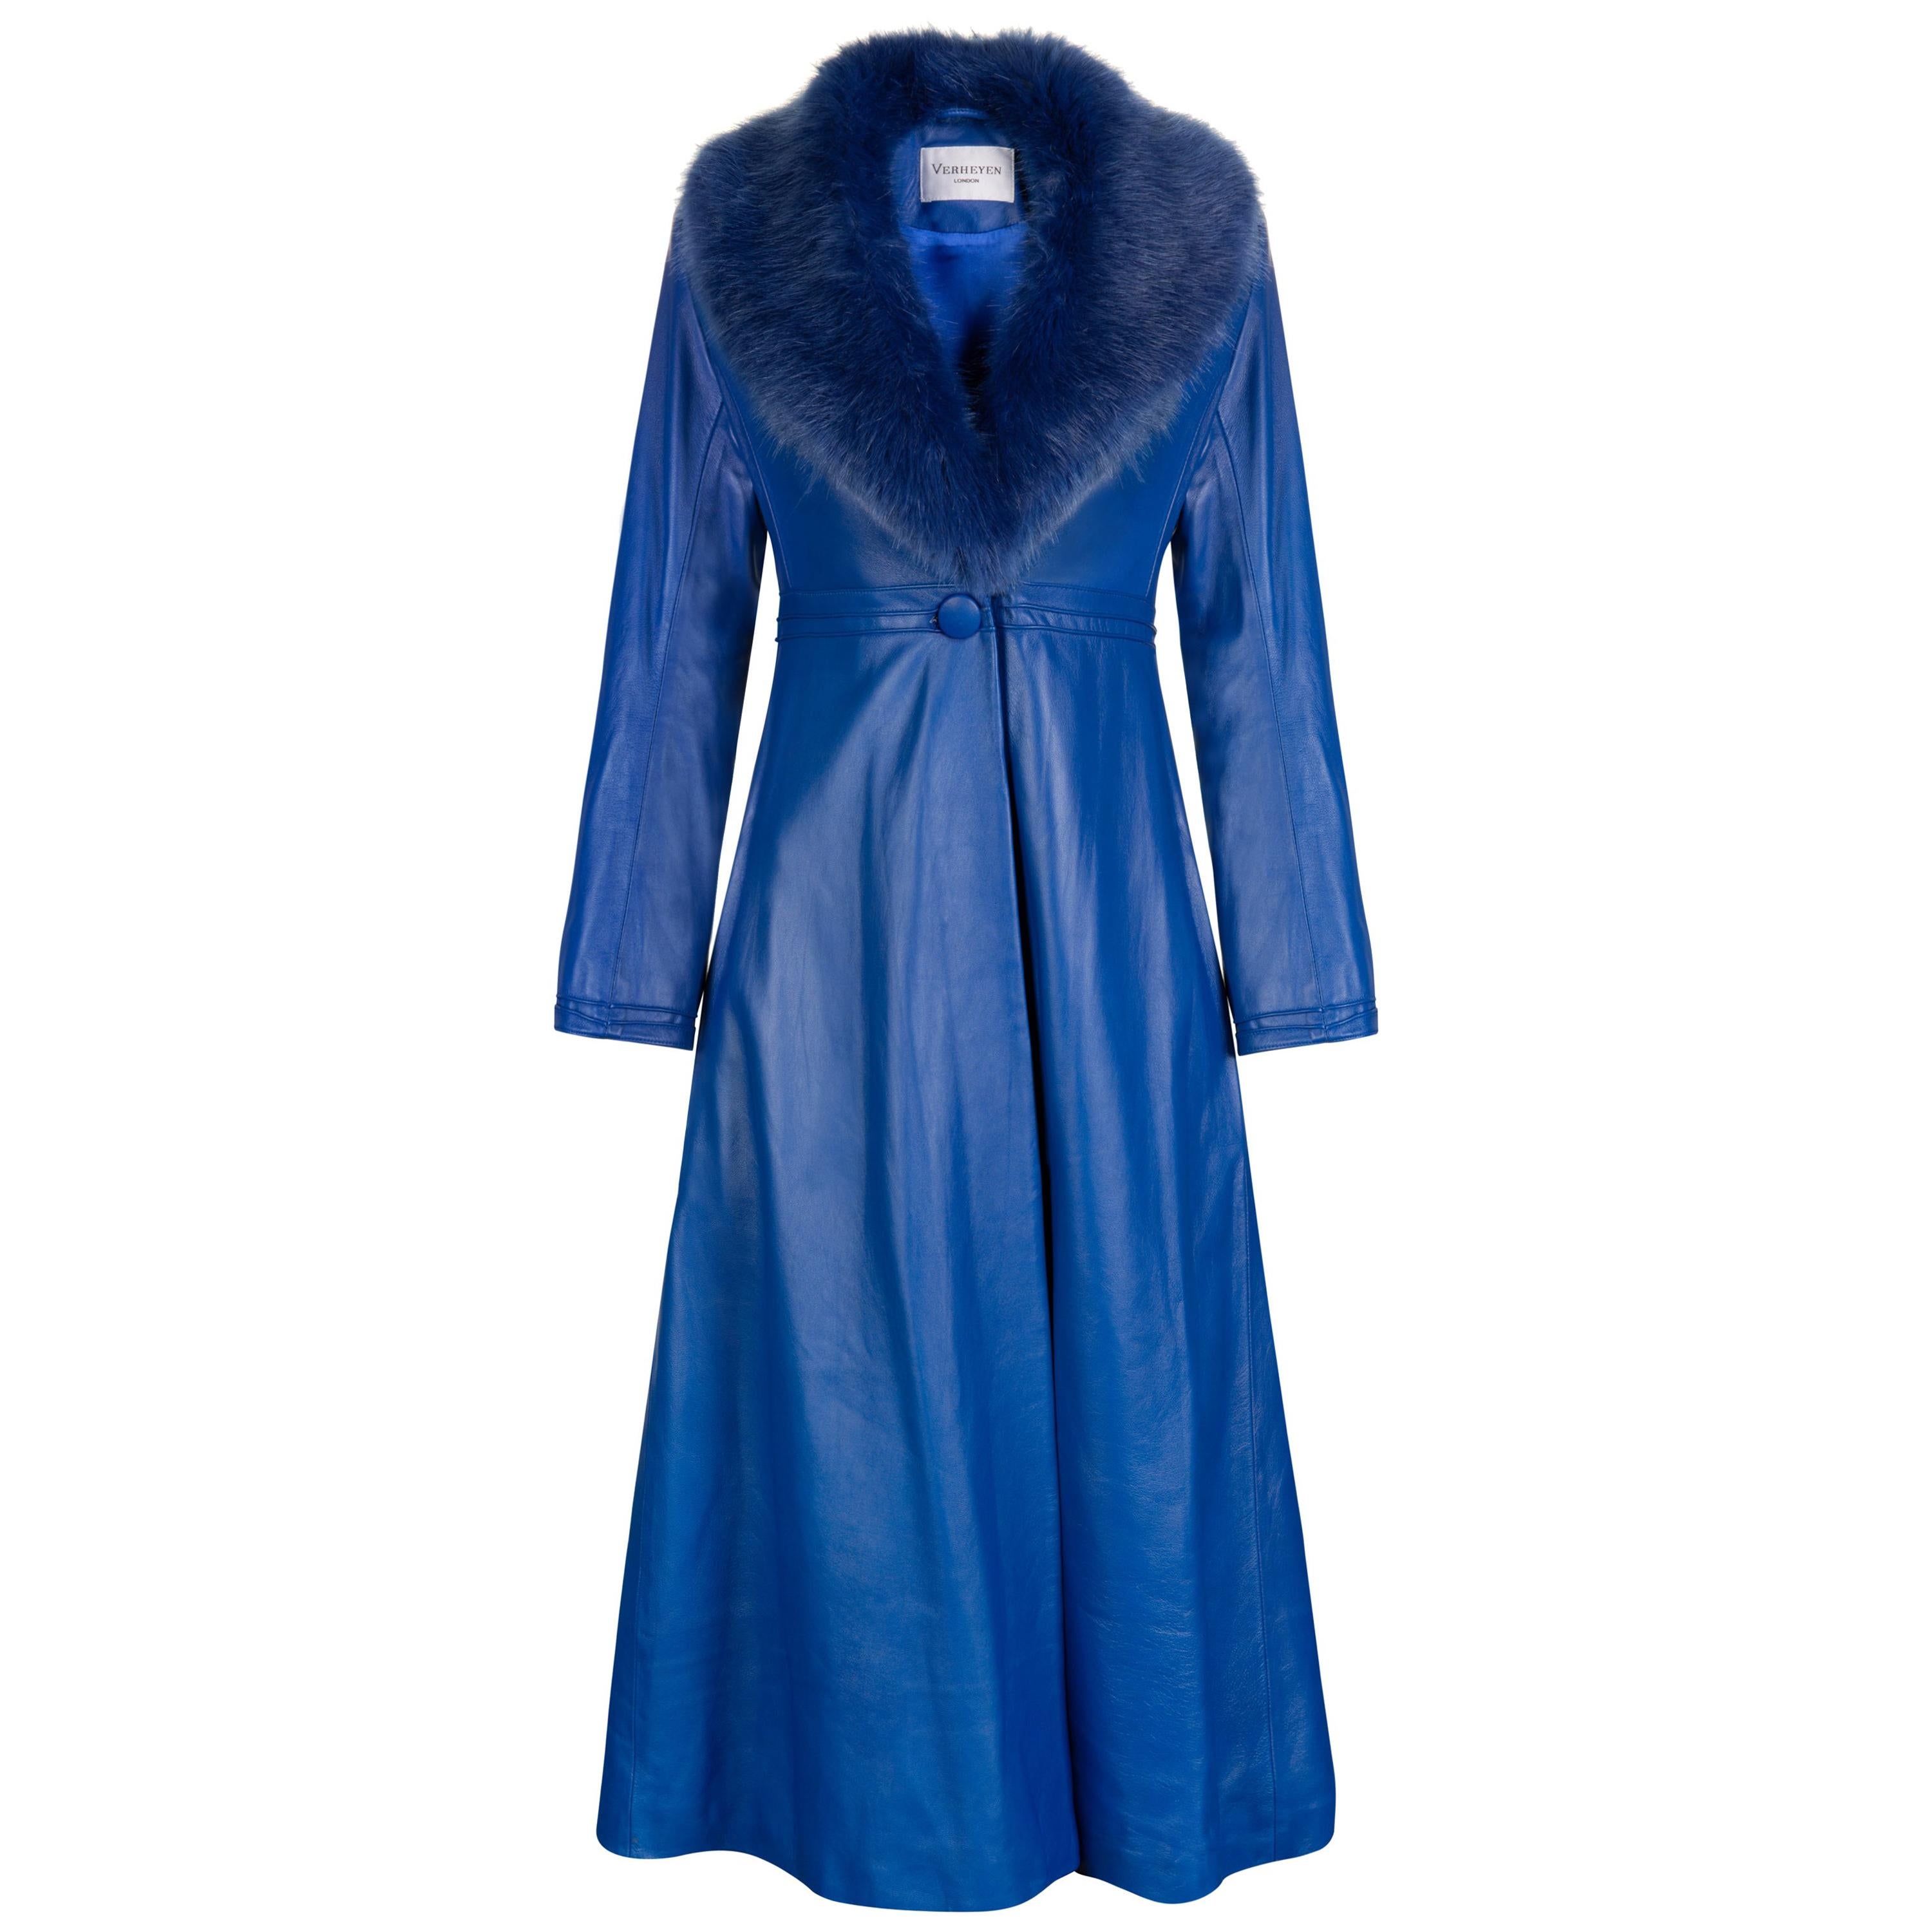 Verheyen London Edward Leather Coat in Blue with Faux Fur - Size uk 14 For Sale